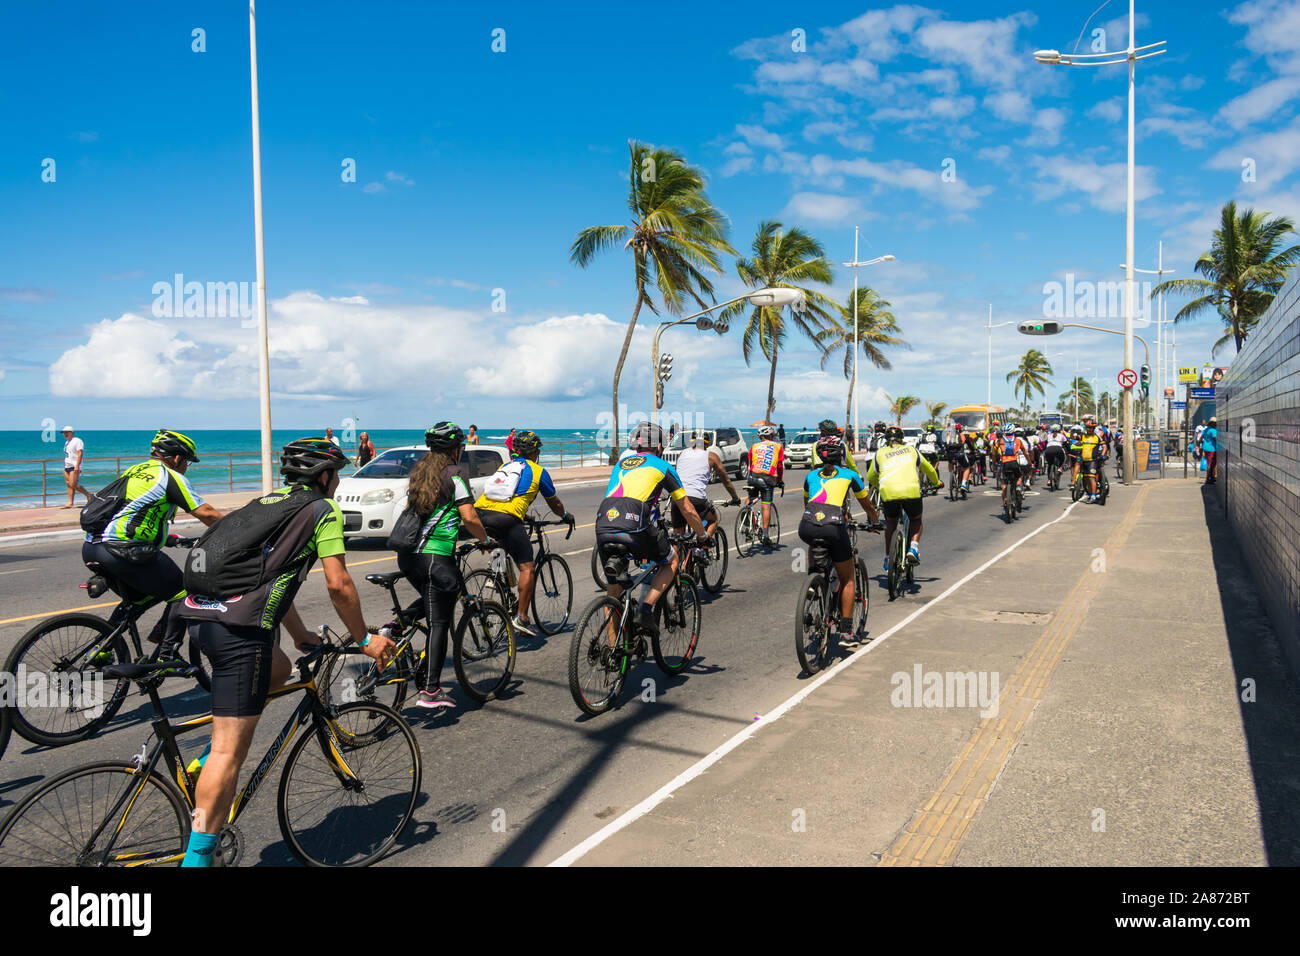 Gruppe der Radfahrer auf den Straßen von itapua Nachbarschaft auf der Welt Autofreier Tag - Strand im Hintergrund Stockfoto